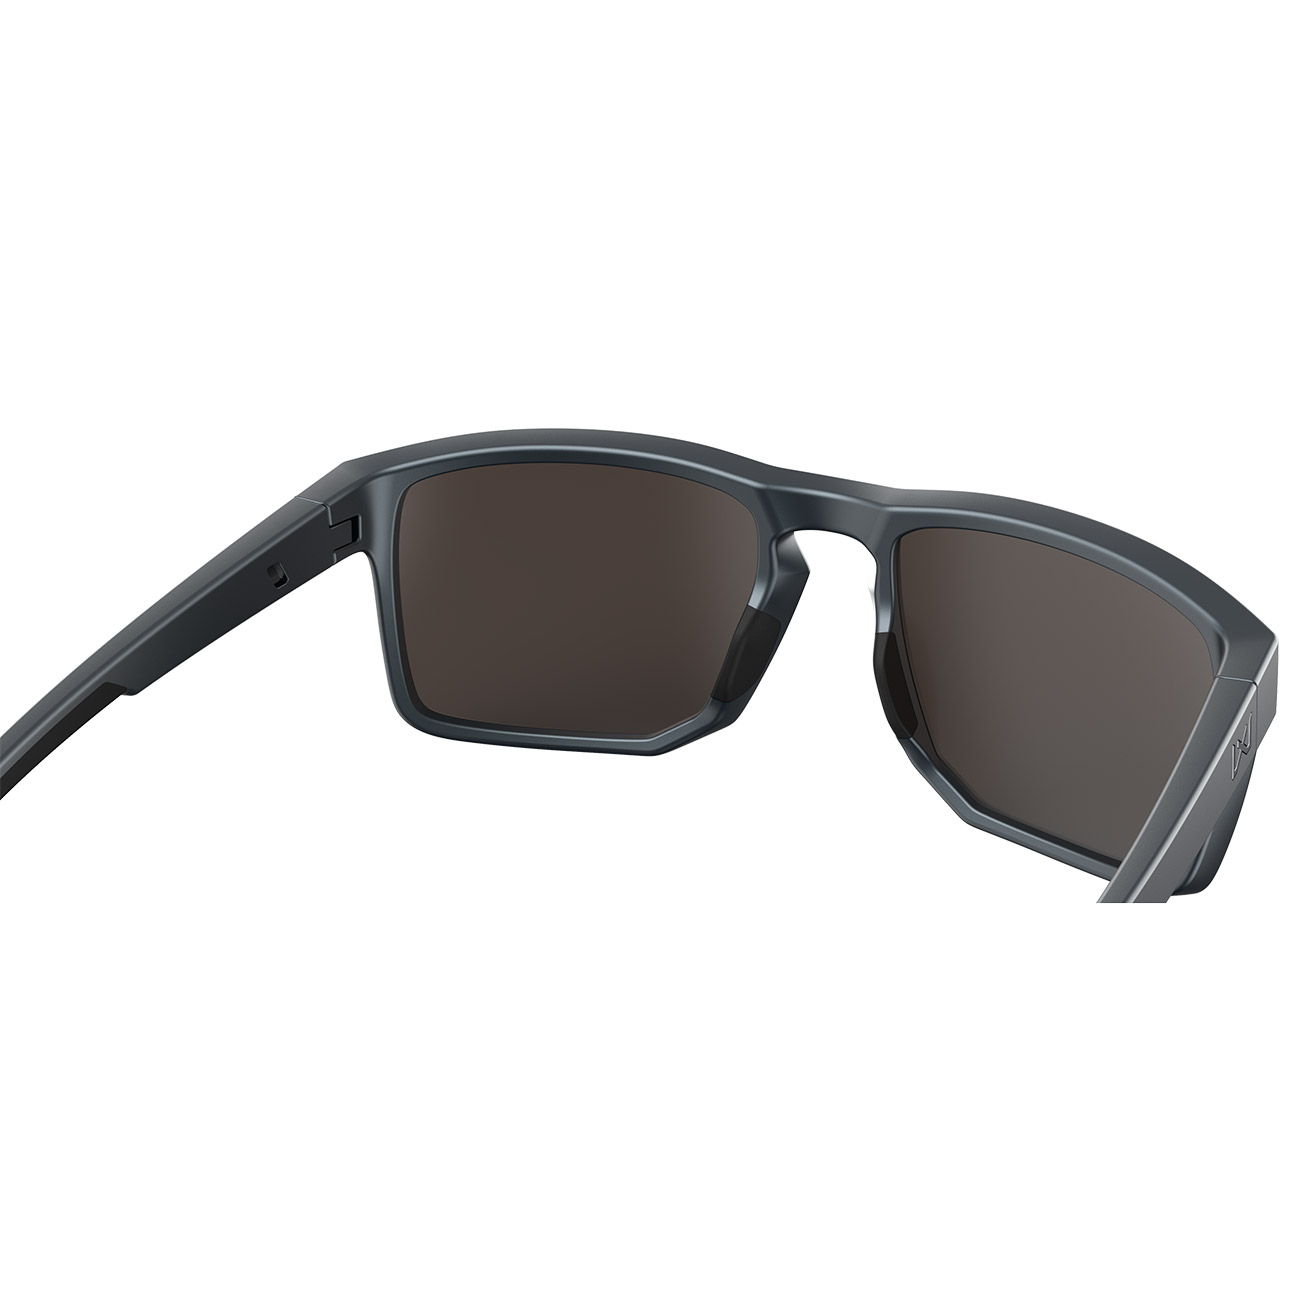 Wiley X Sonnenbrille Founder Captivate matt grau Glser grn verspiegelt und polarisiert inkl. Seitenschutz Bild 3